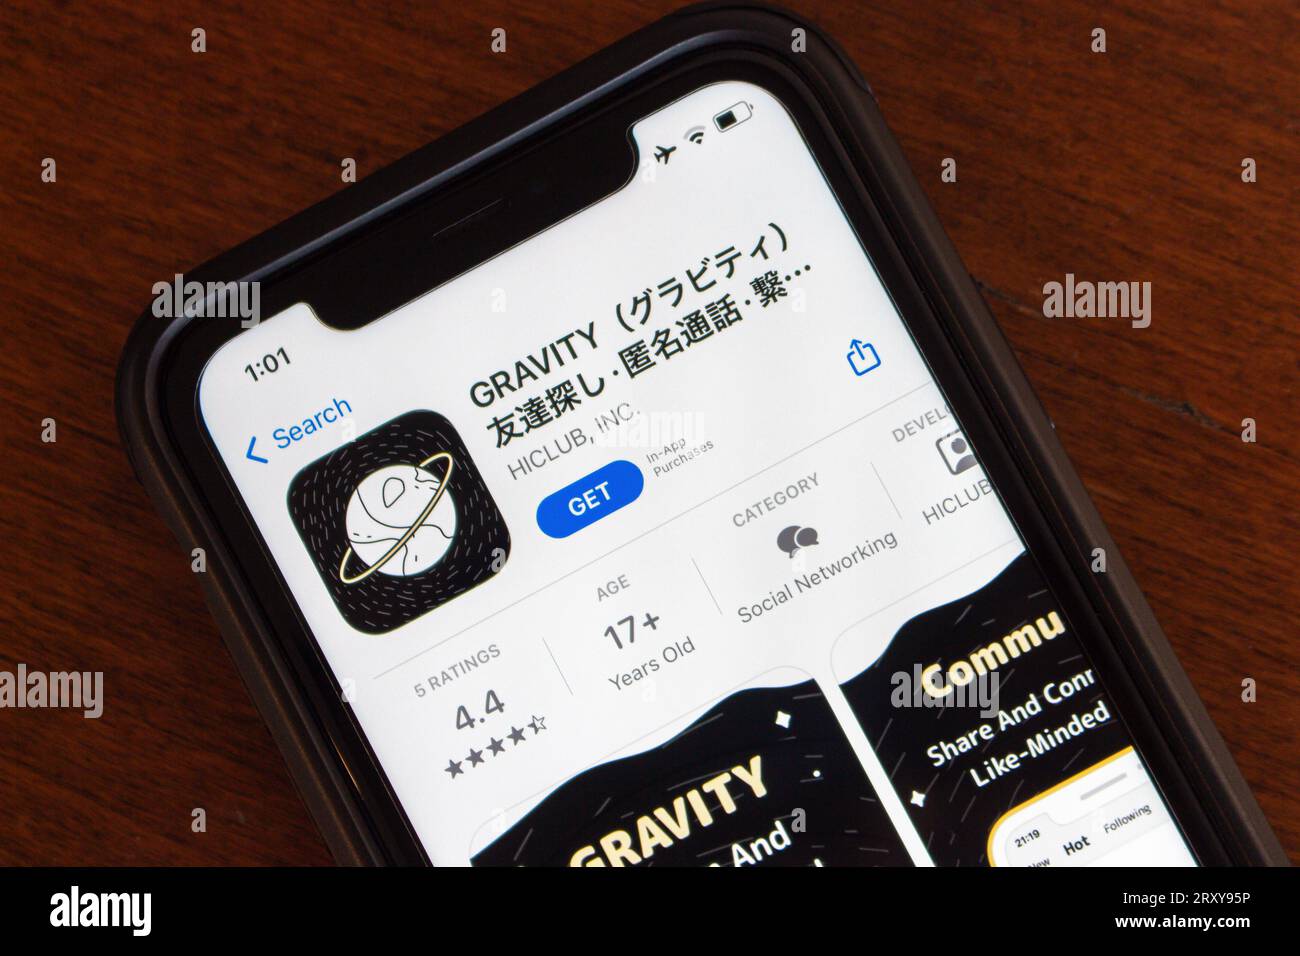 Application Gravity visible dans l'App Store. L'application Gravity permet aux utilisateurs de se connecter avec d'autres personnes de manière anonyme, offrant des fonctionnalités telles que la recherche d'amis, les appels et le chat Banque D'Images